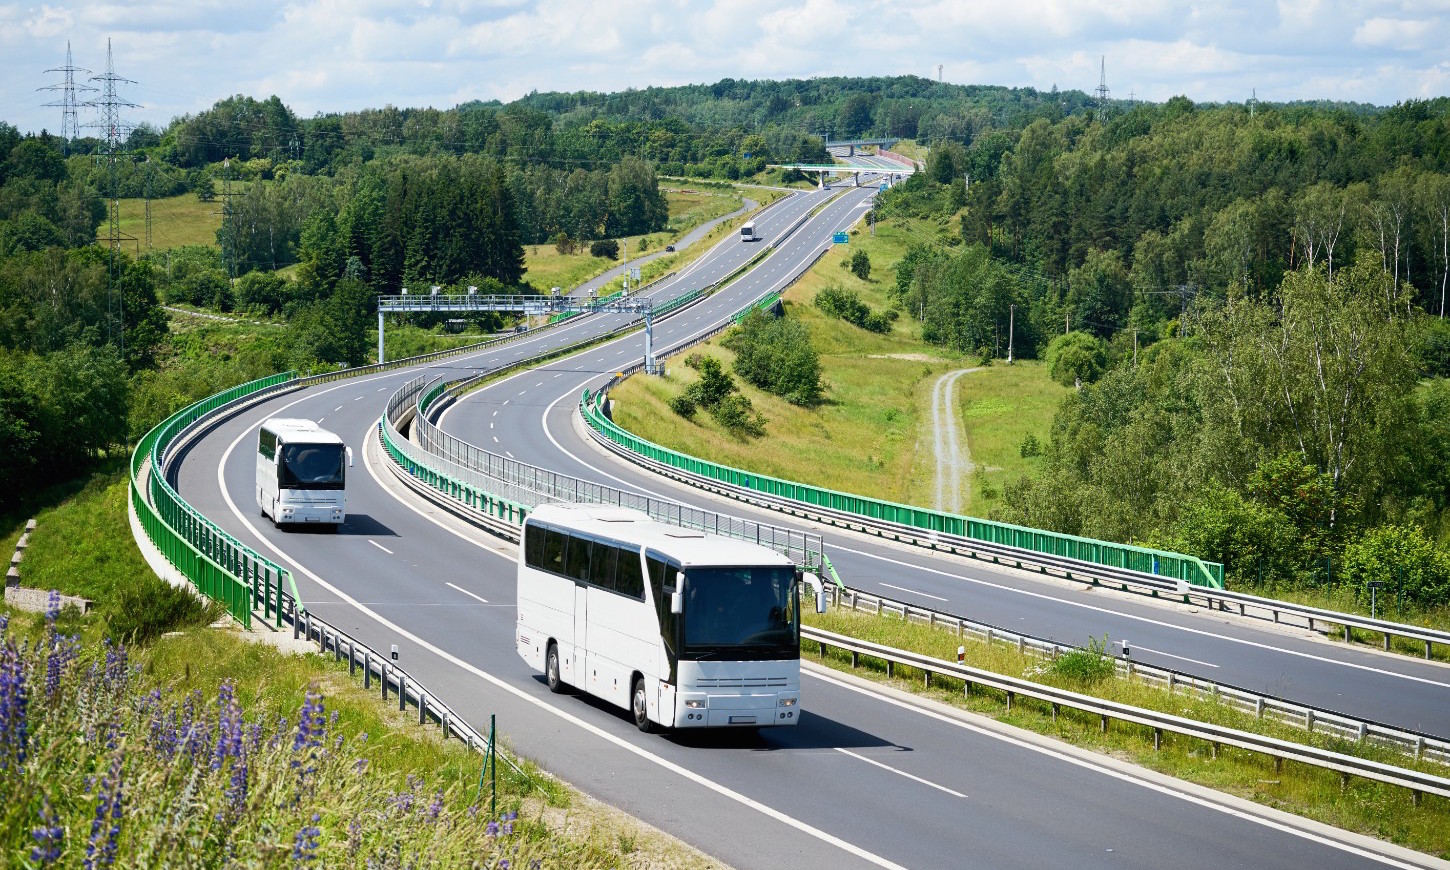 Bus of touringcar huren voor bedrijfsuitjes